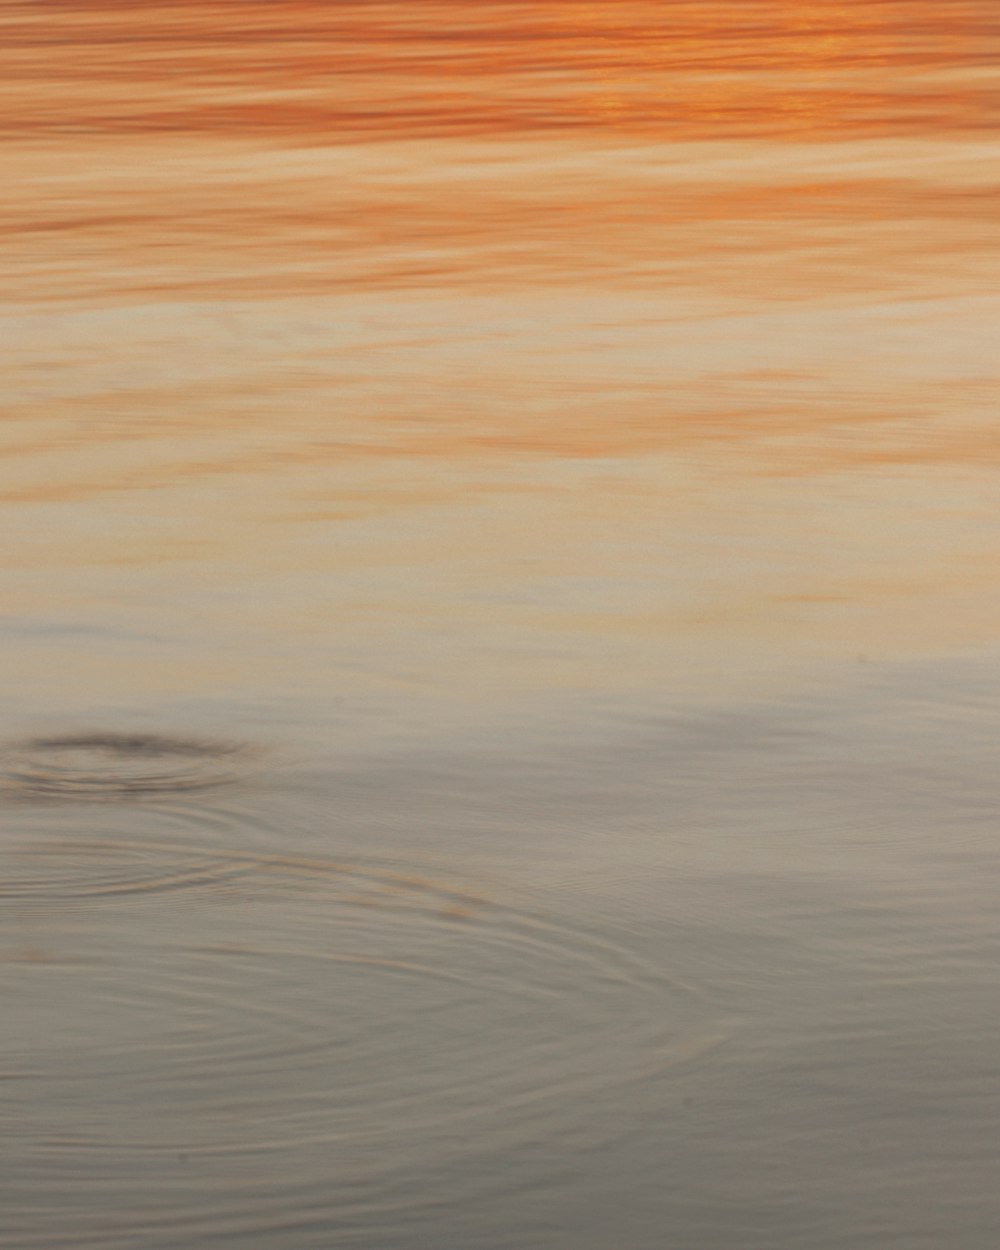 Ein Vogel steht bei Sonnenuntergang im Wasser